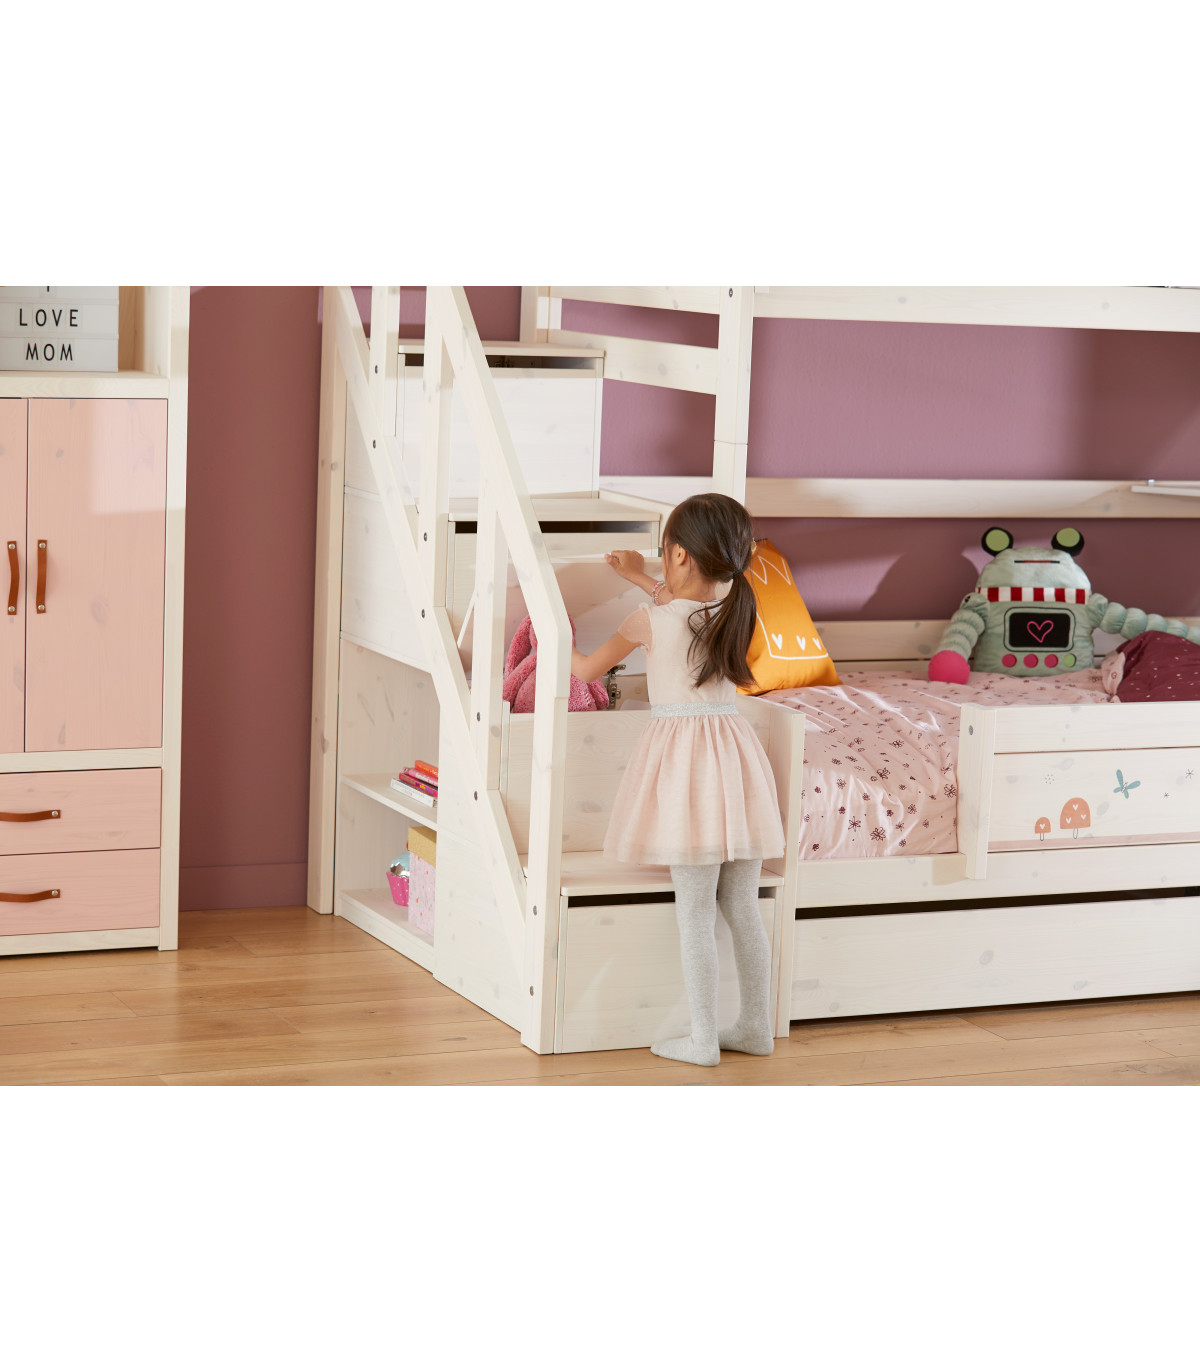 Chambres d'enfants : sur un lit de camp ! • Plumetis Magazine